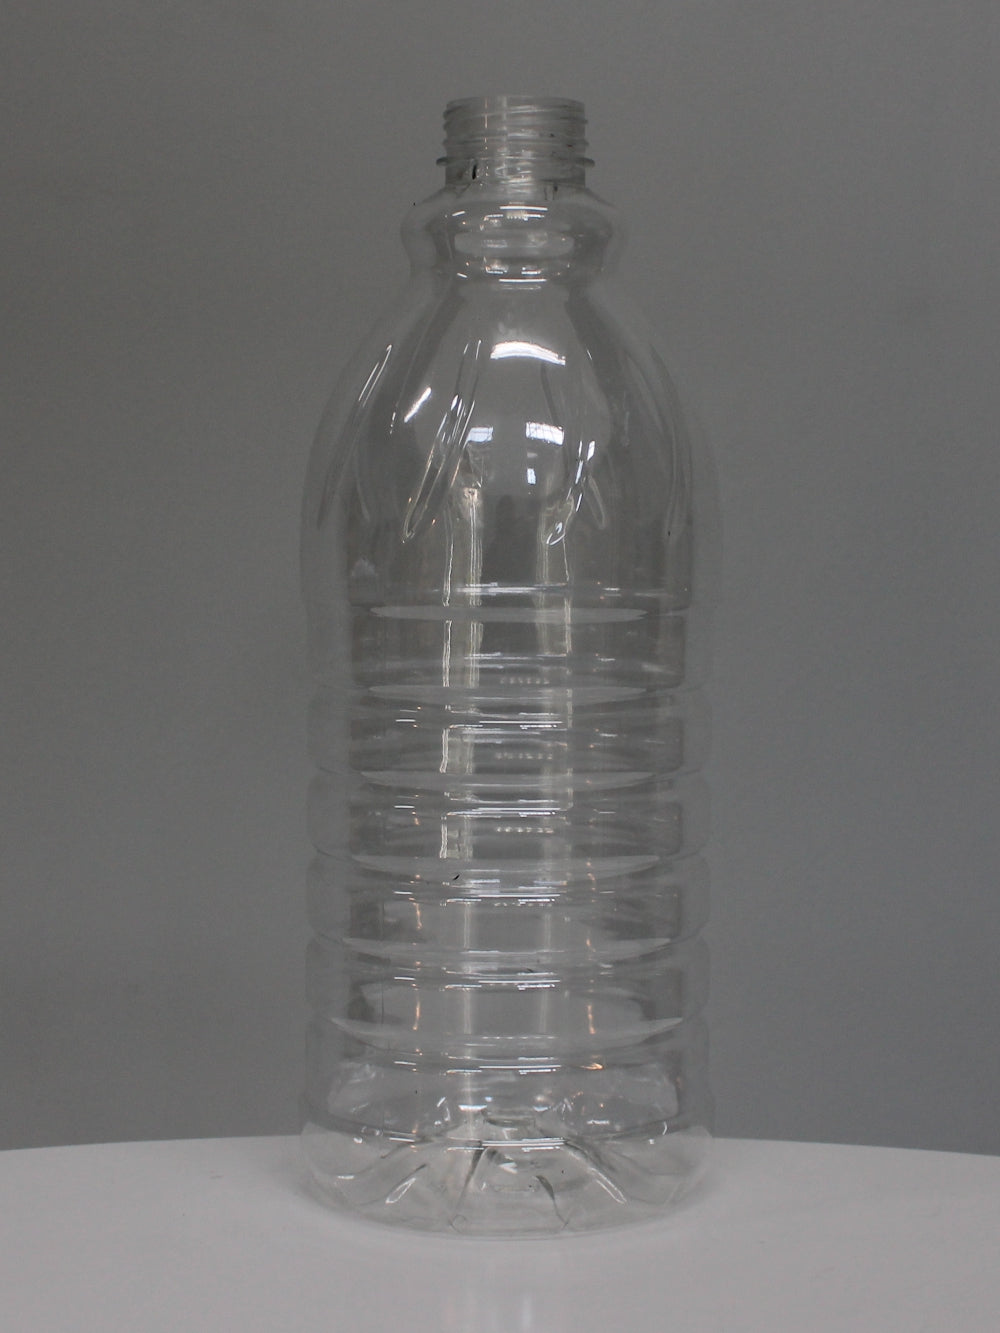 2Lt Classic Juice PET Bottle - (Pack of 36 units)